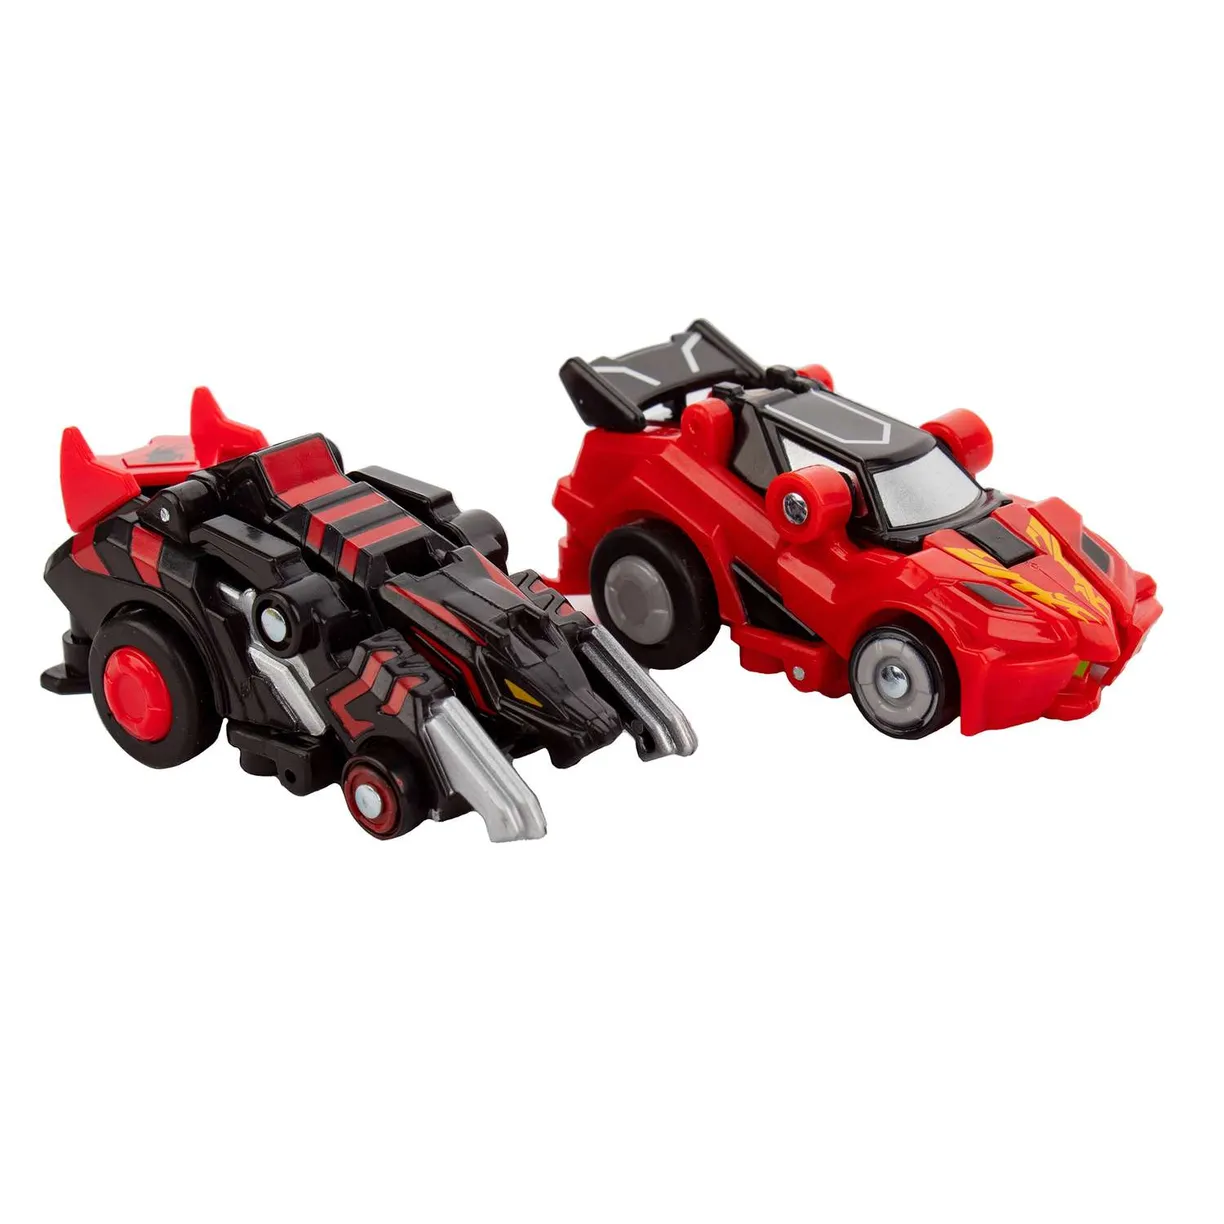 Машинки-трансформеры Blaze Rider и Attack Tiger - фото